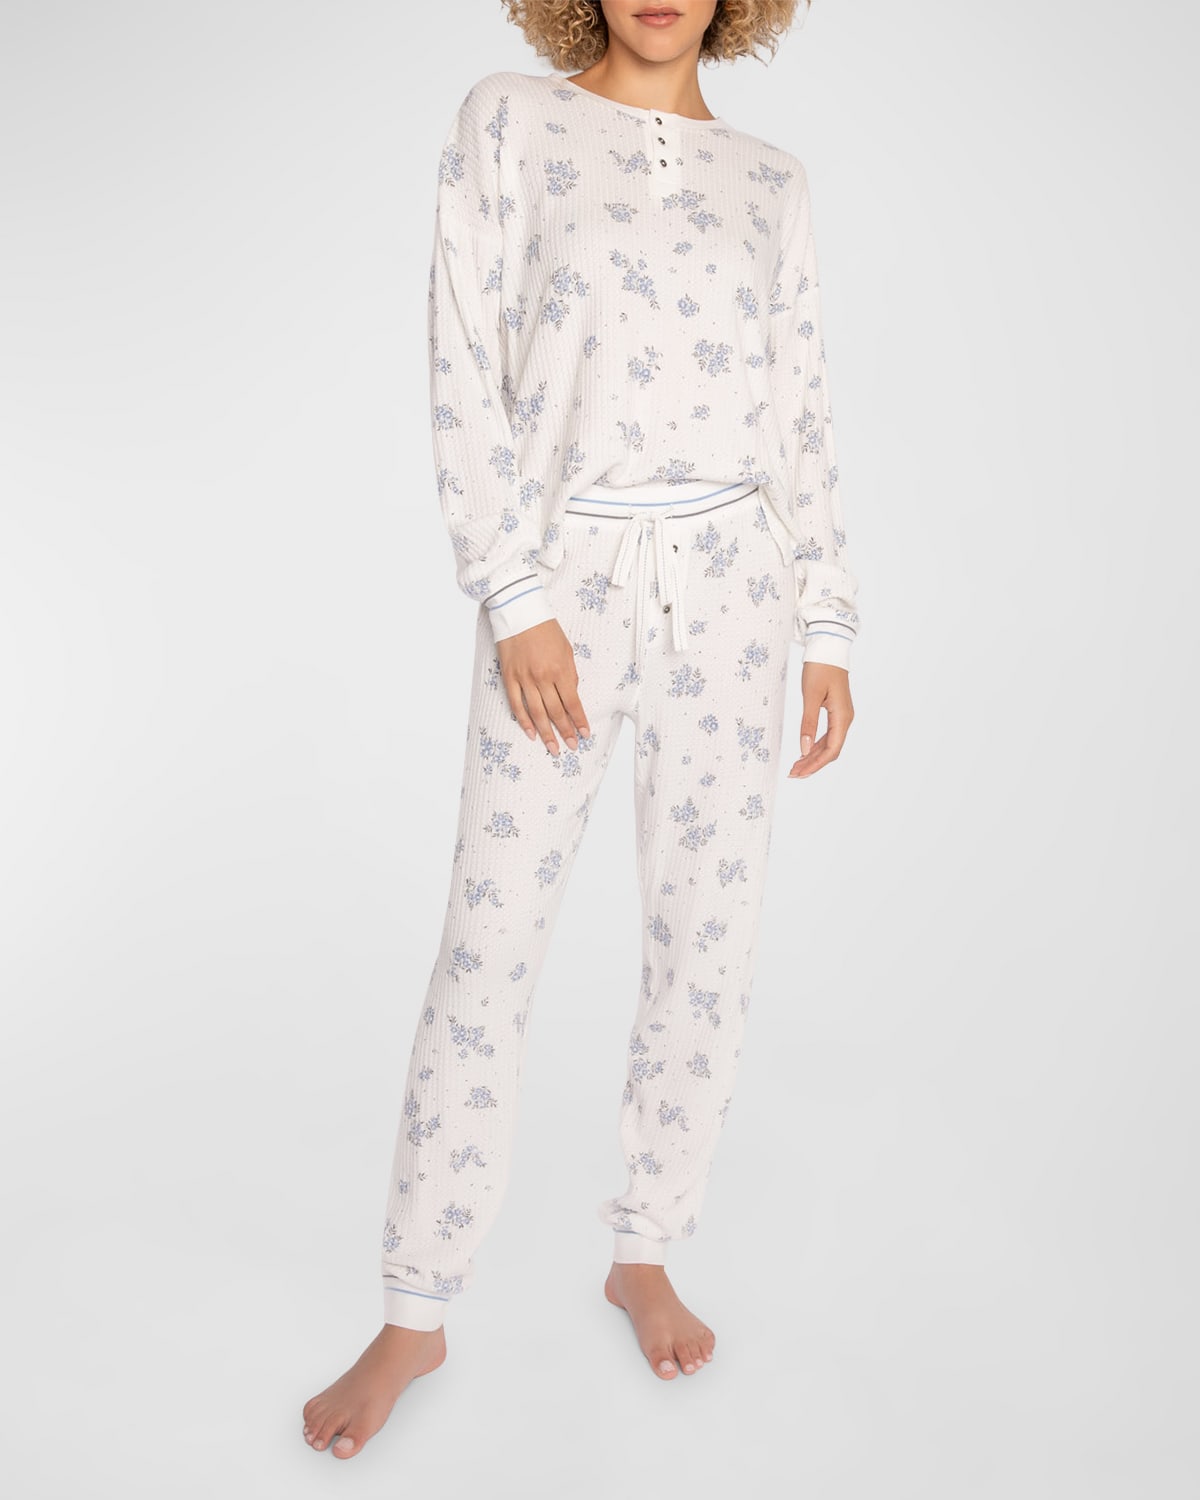 Matching Printed Thermal Pajama Set for Women